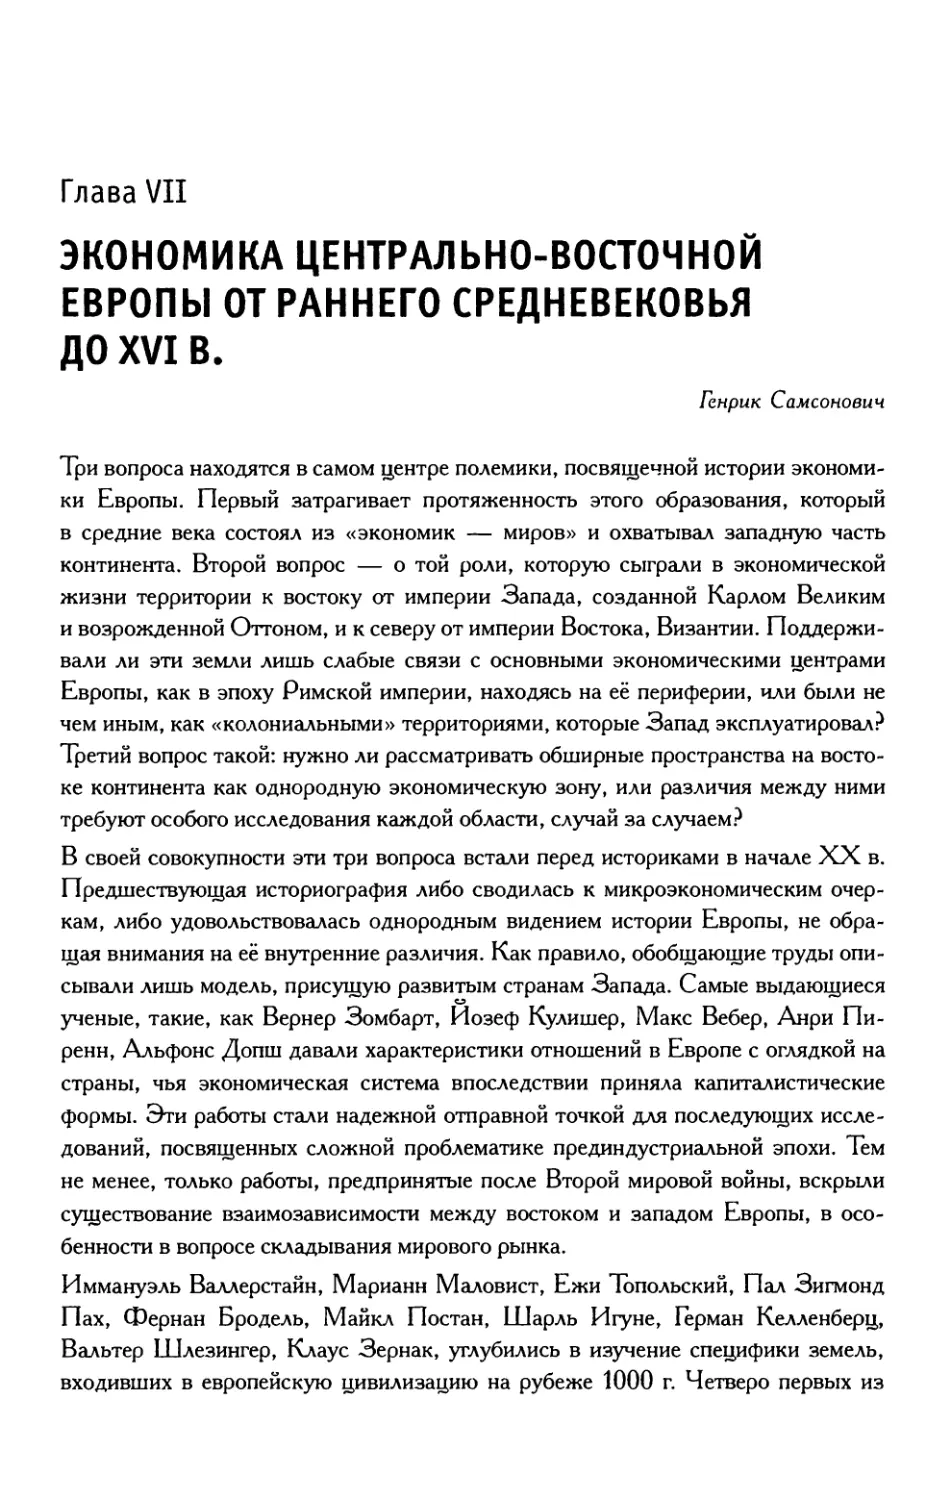 Глава 7. Экономика Центрально-Восточной Европы от раннего средневековья до XVI в.